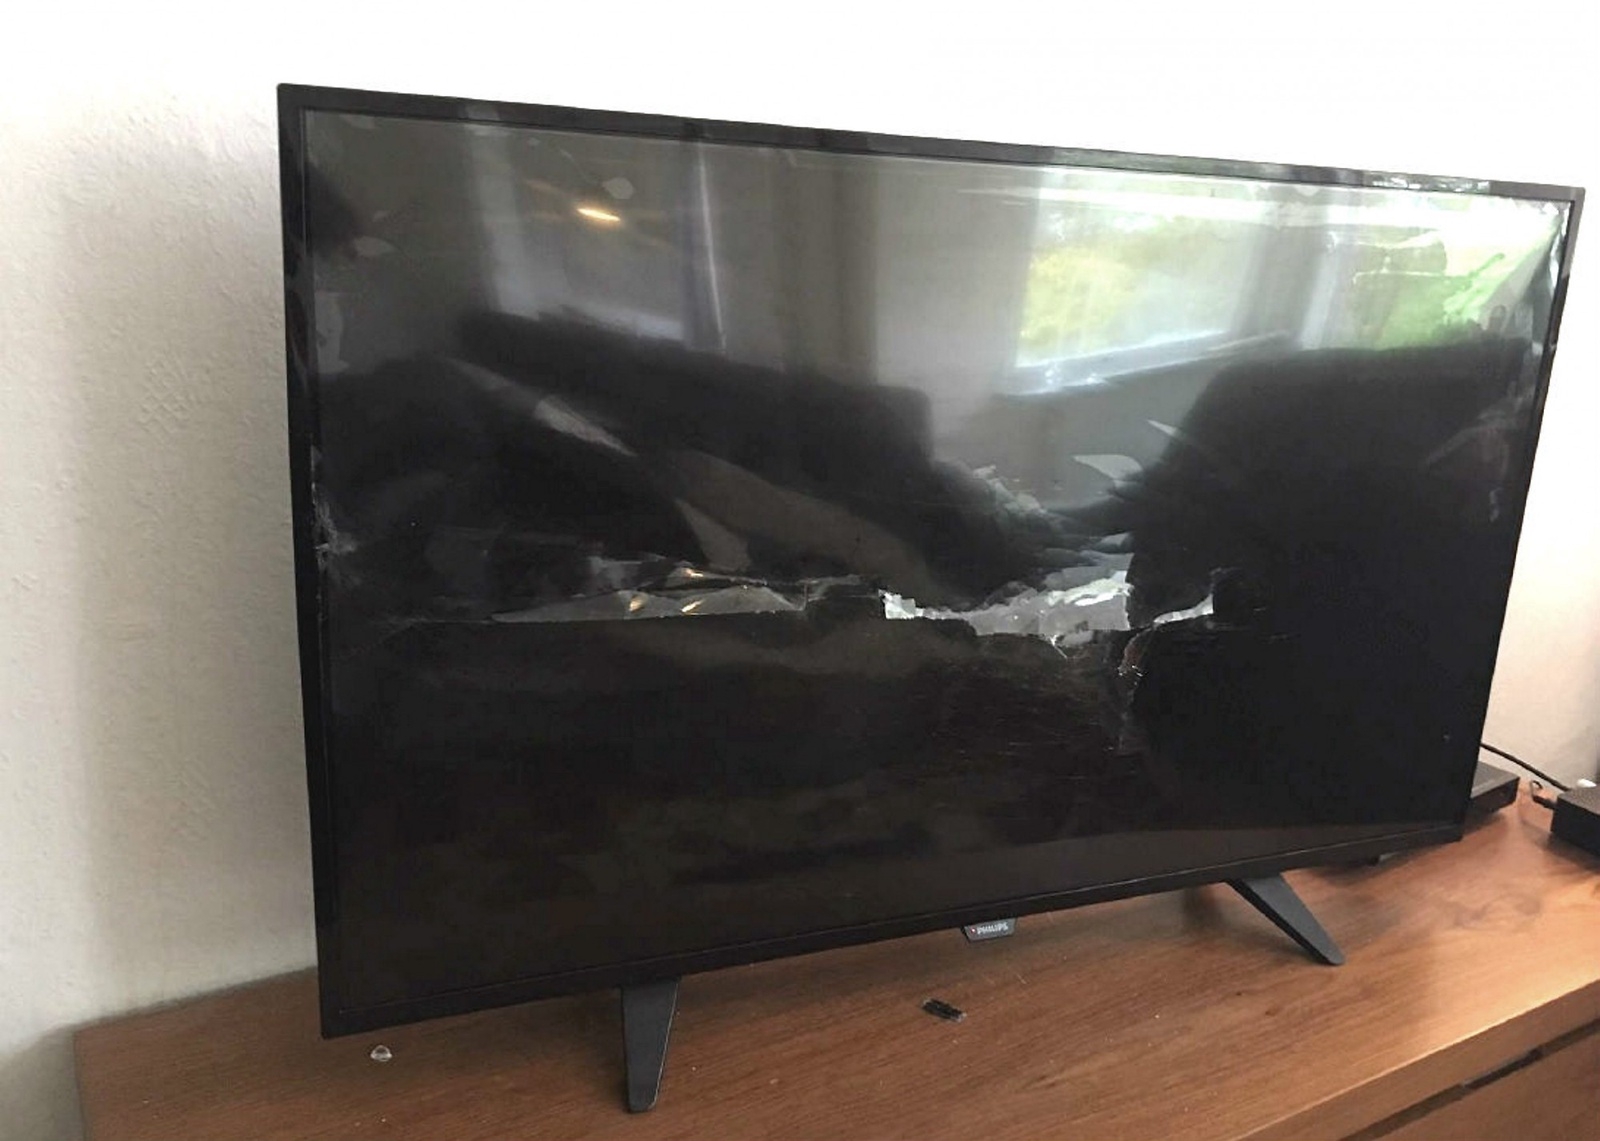 Två tv-apparater och två datorer med tillhörande skärmar slogs sönder av 17-åringen.
8Foto: Polisen